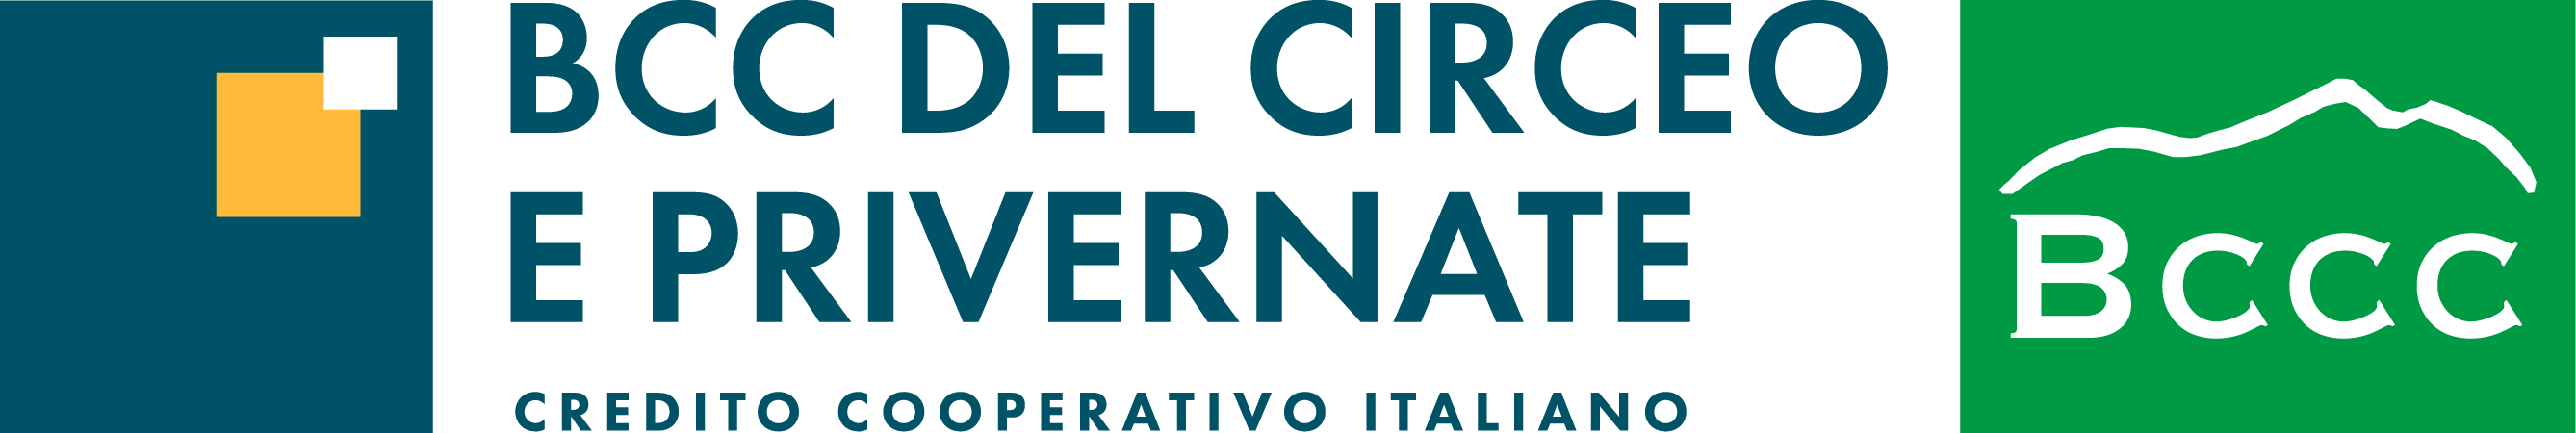 Logo BCC del Circeo e Privernate